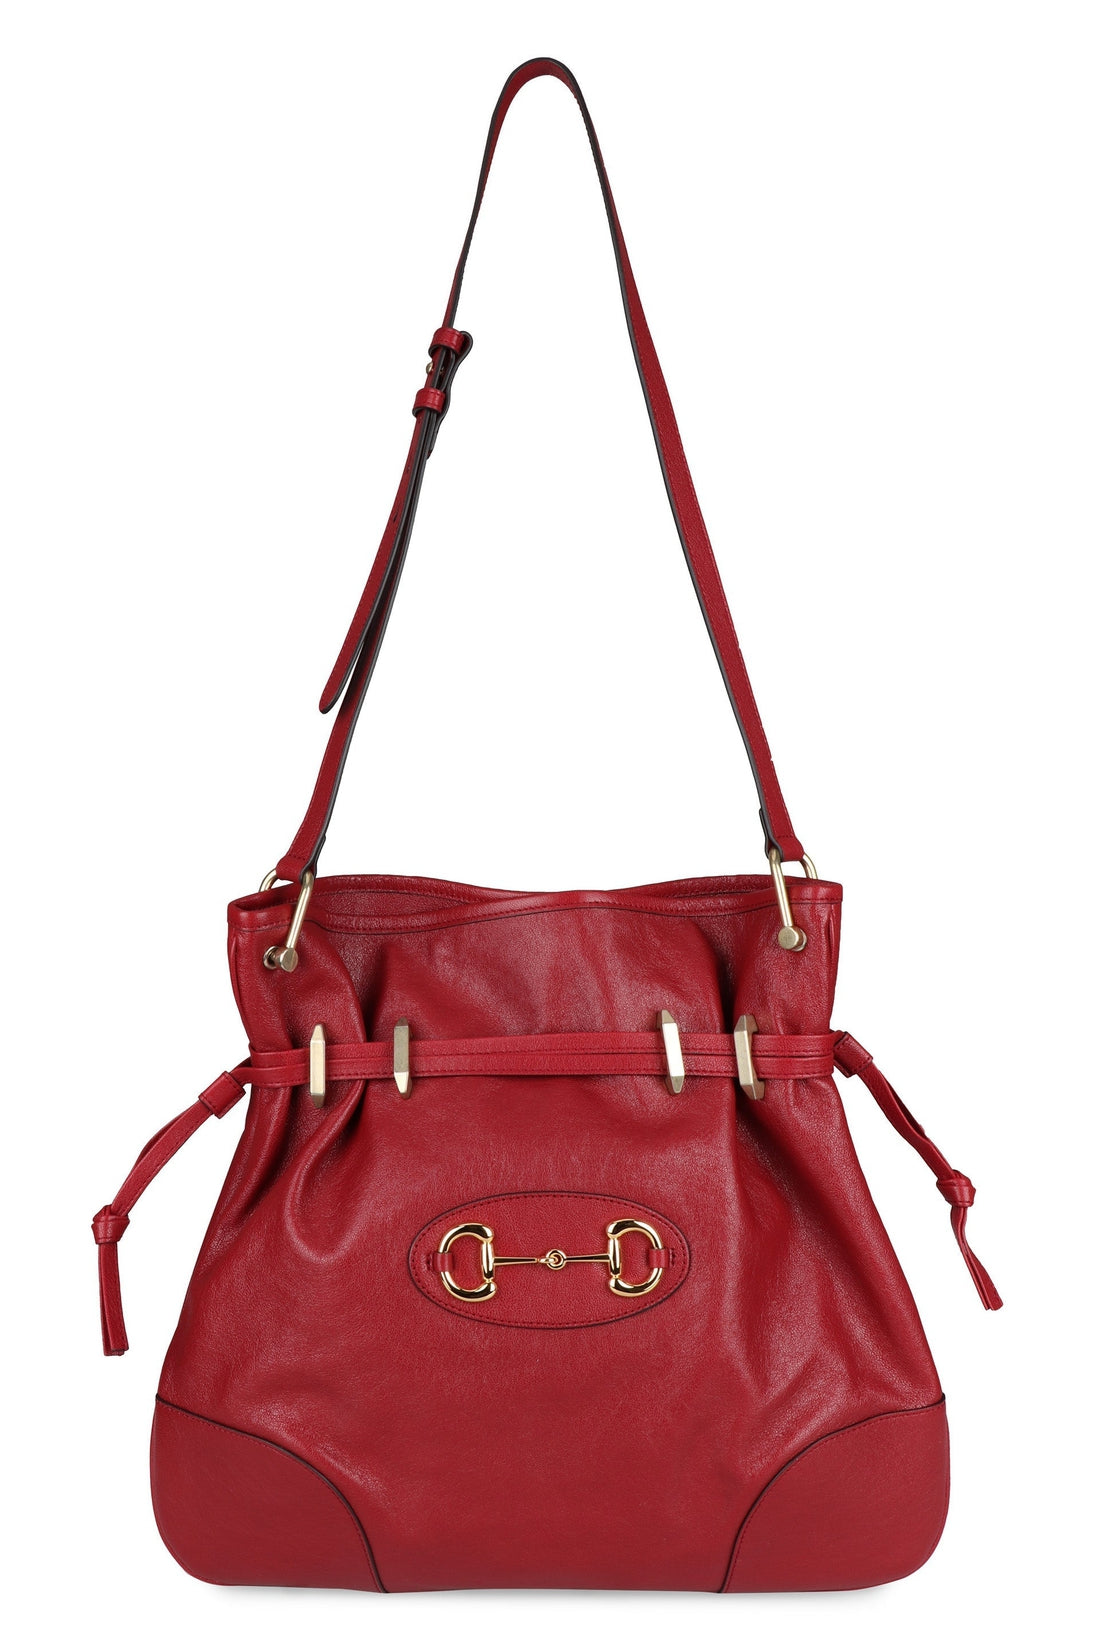 Gucci-OUTLET-SALE-Gucci 1955 Horsebit leather bag-ARCHIVIST